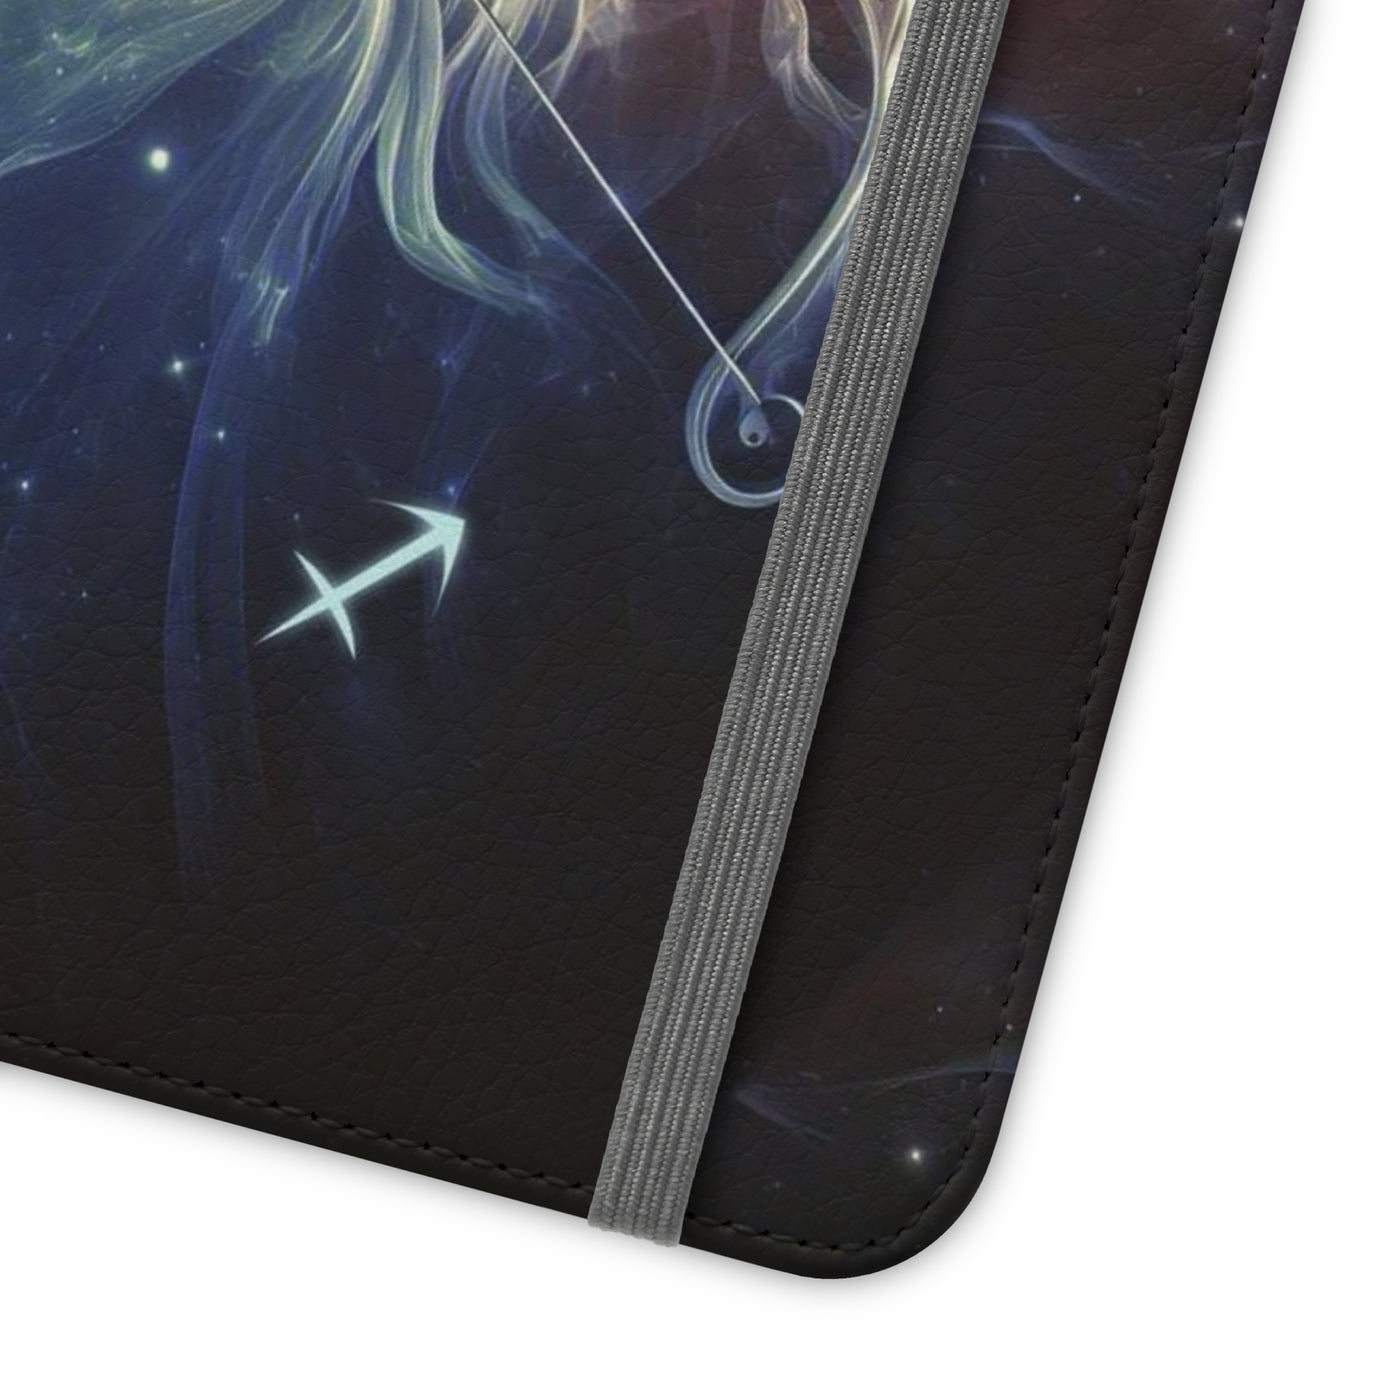 Sagittarius Zodiac Sign Flip Case Phone Cover